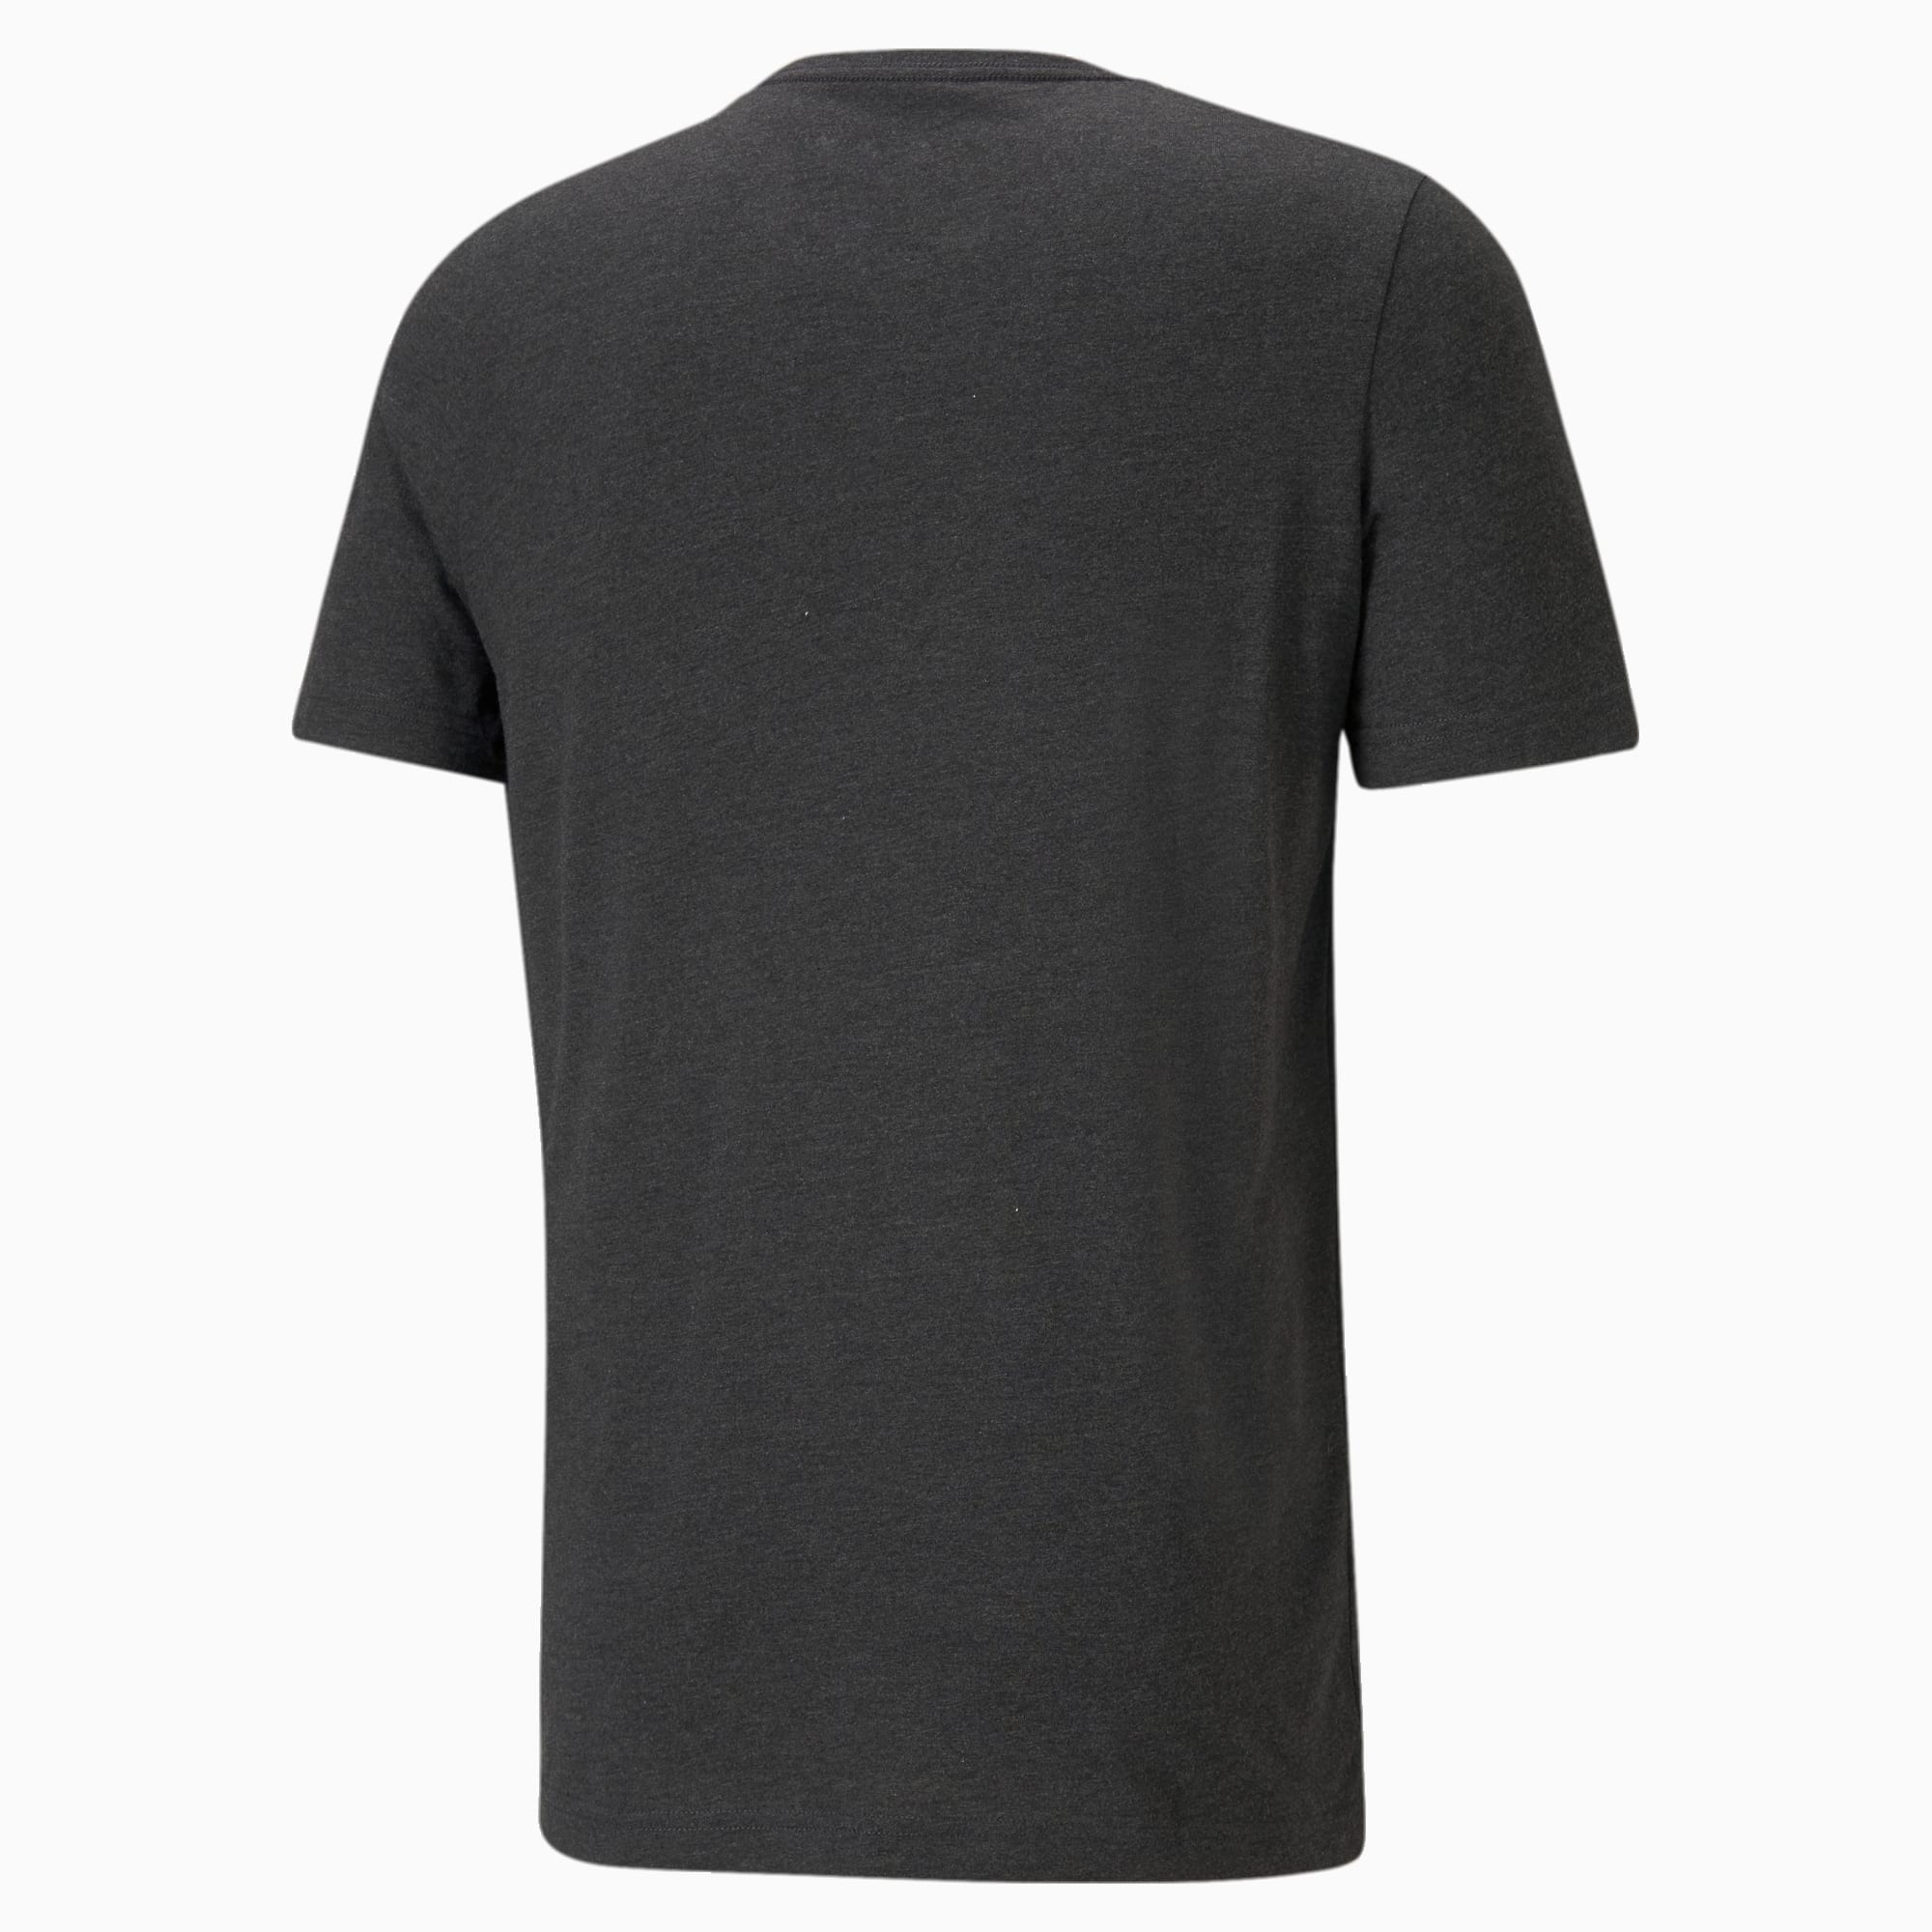 PUMA Essentials Heather Men's T-Shirt, Dark Grey Heather, Size 6XL, Clothing